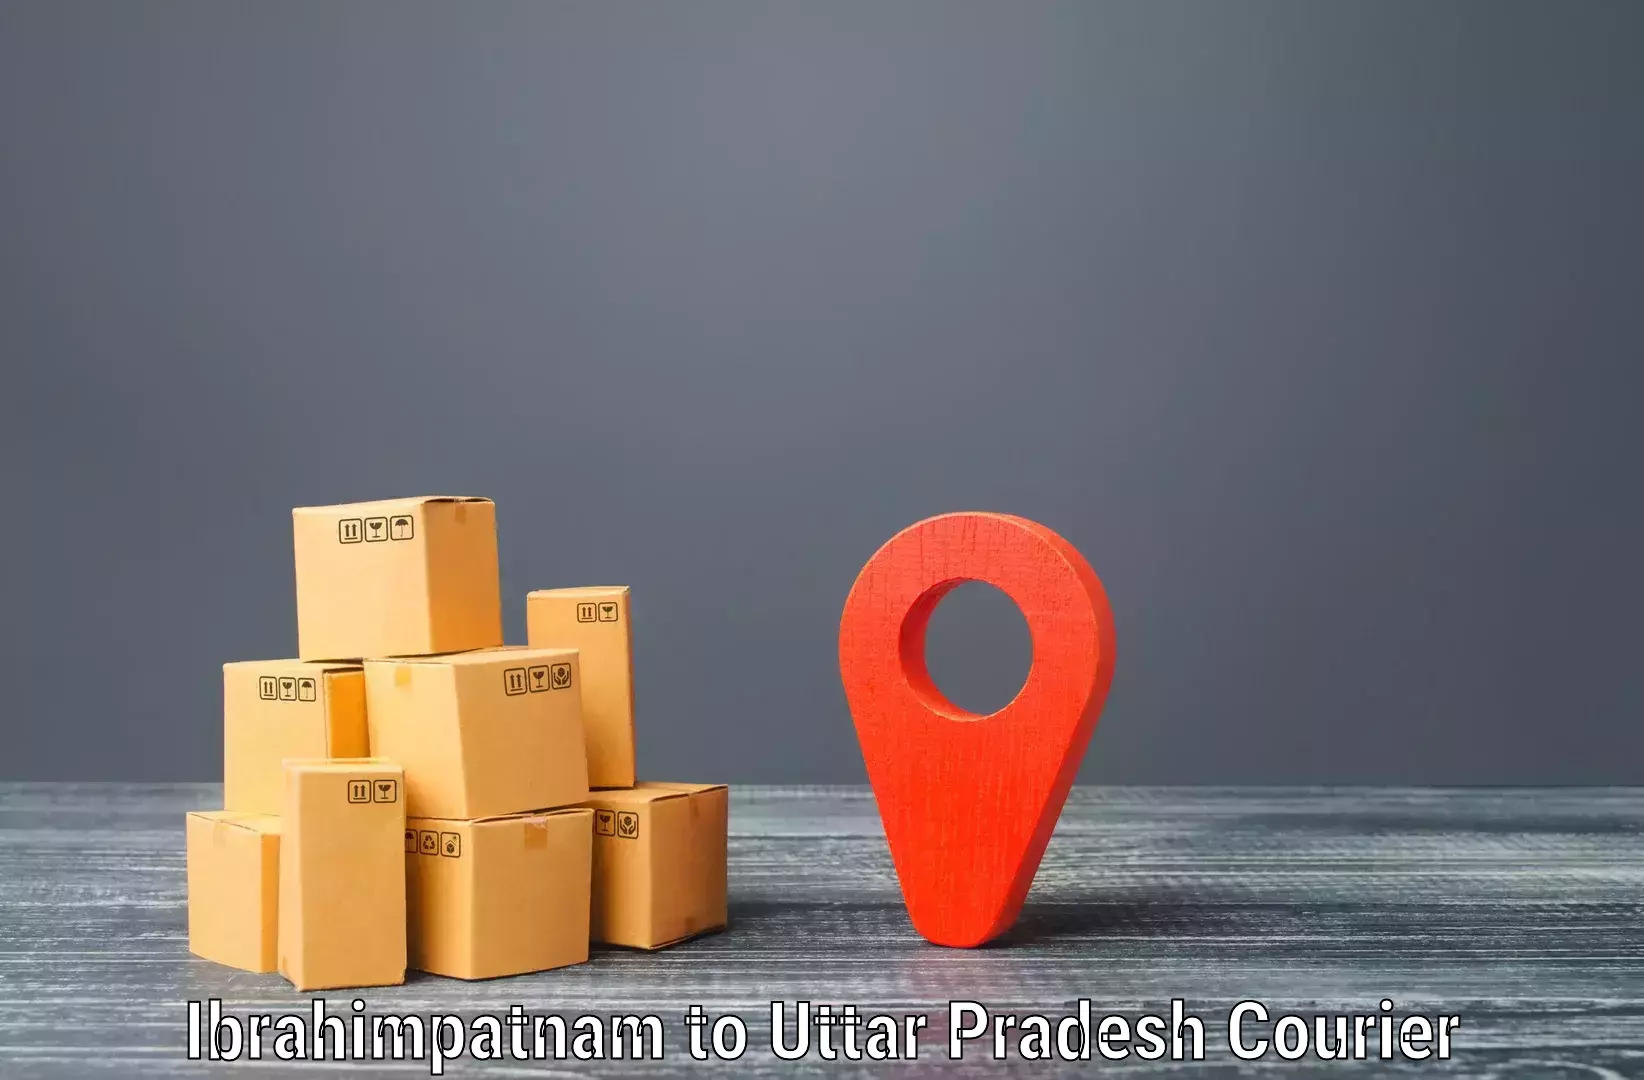 Global courier networks Ibrahimpatnam to Ganj Dundwara